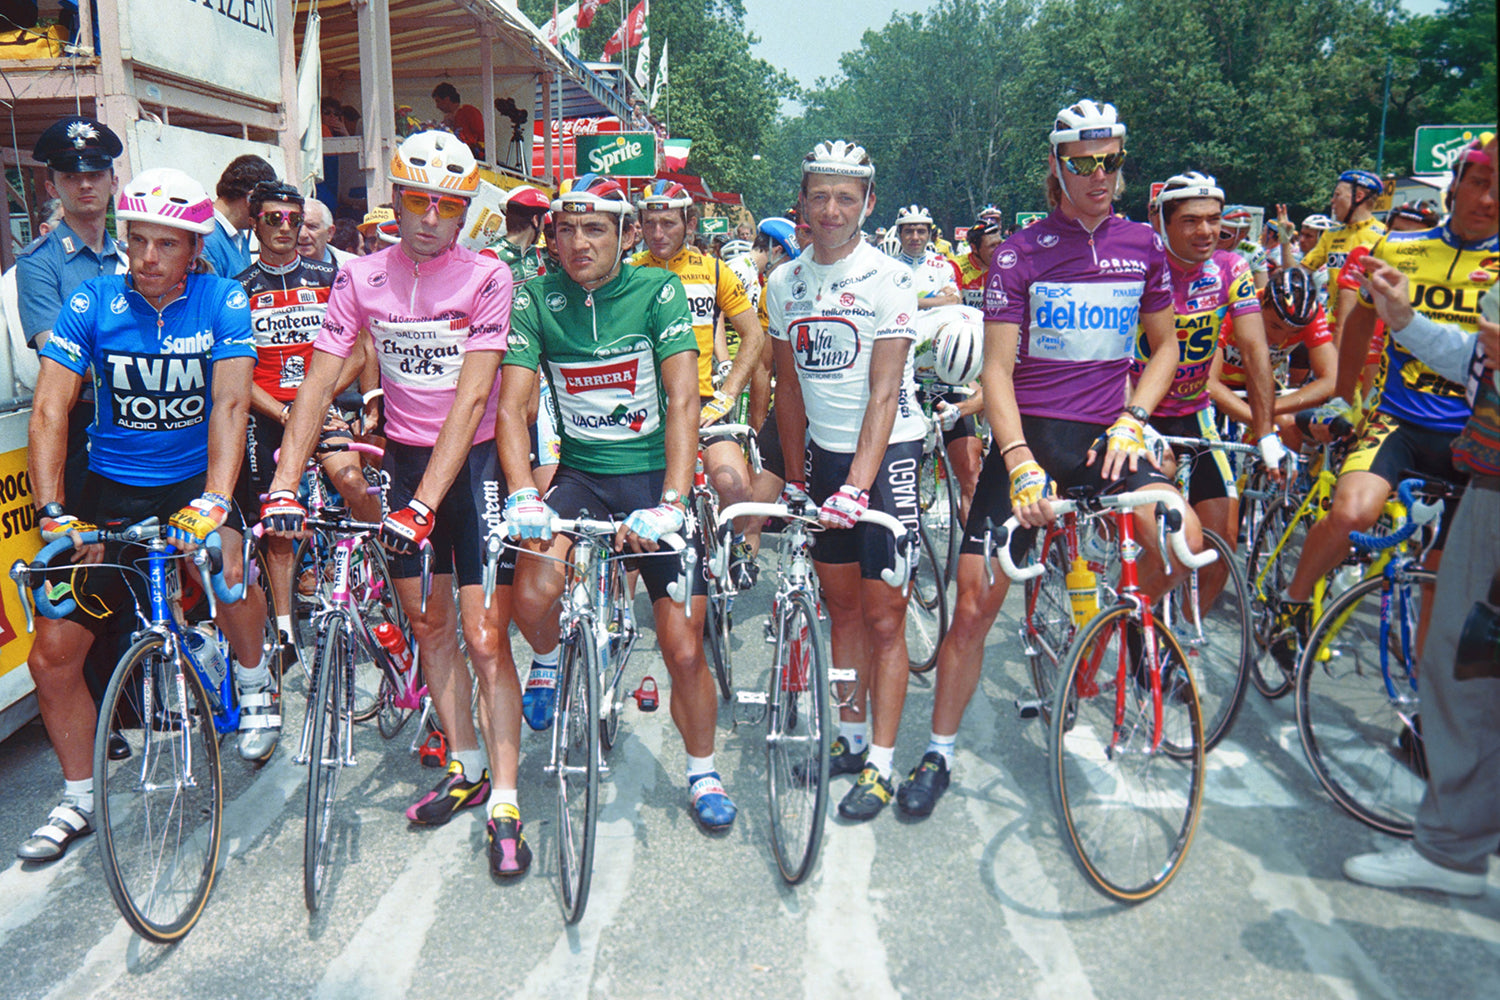 Giro D'Italia in 1990:  Phil Anderson (Tvm - Yoko), Gianni Bugno (Salotti - Chateau d'Ax), Claudio Chiappucci (Carrera), Vladimir Pulnikov (Alfa Lum) and Mario Cipollini (Del Tongo - Mele Val di Non).